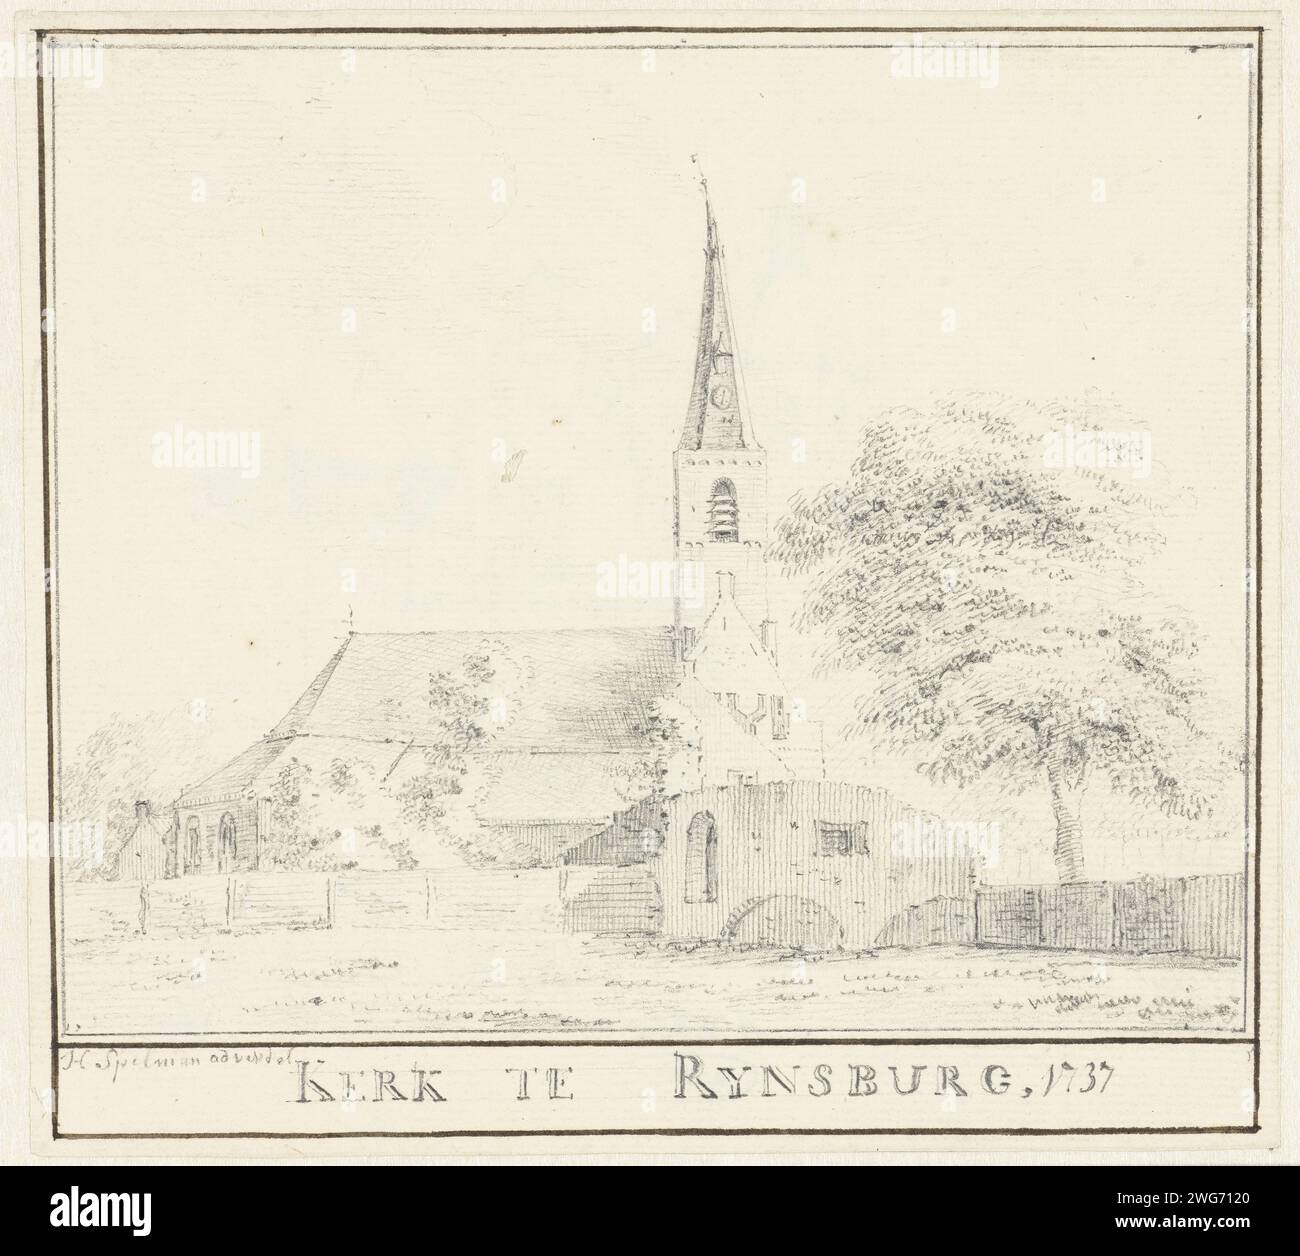 L'église de Rijnsburg, Hendrik Spilman, 1737 papier à dessin. Église crayon (extérieur) Rijnsburg Banque D'Images